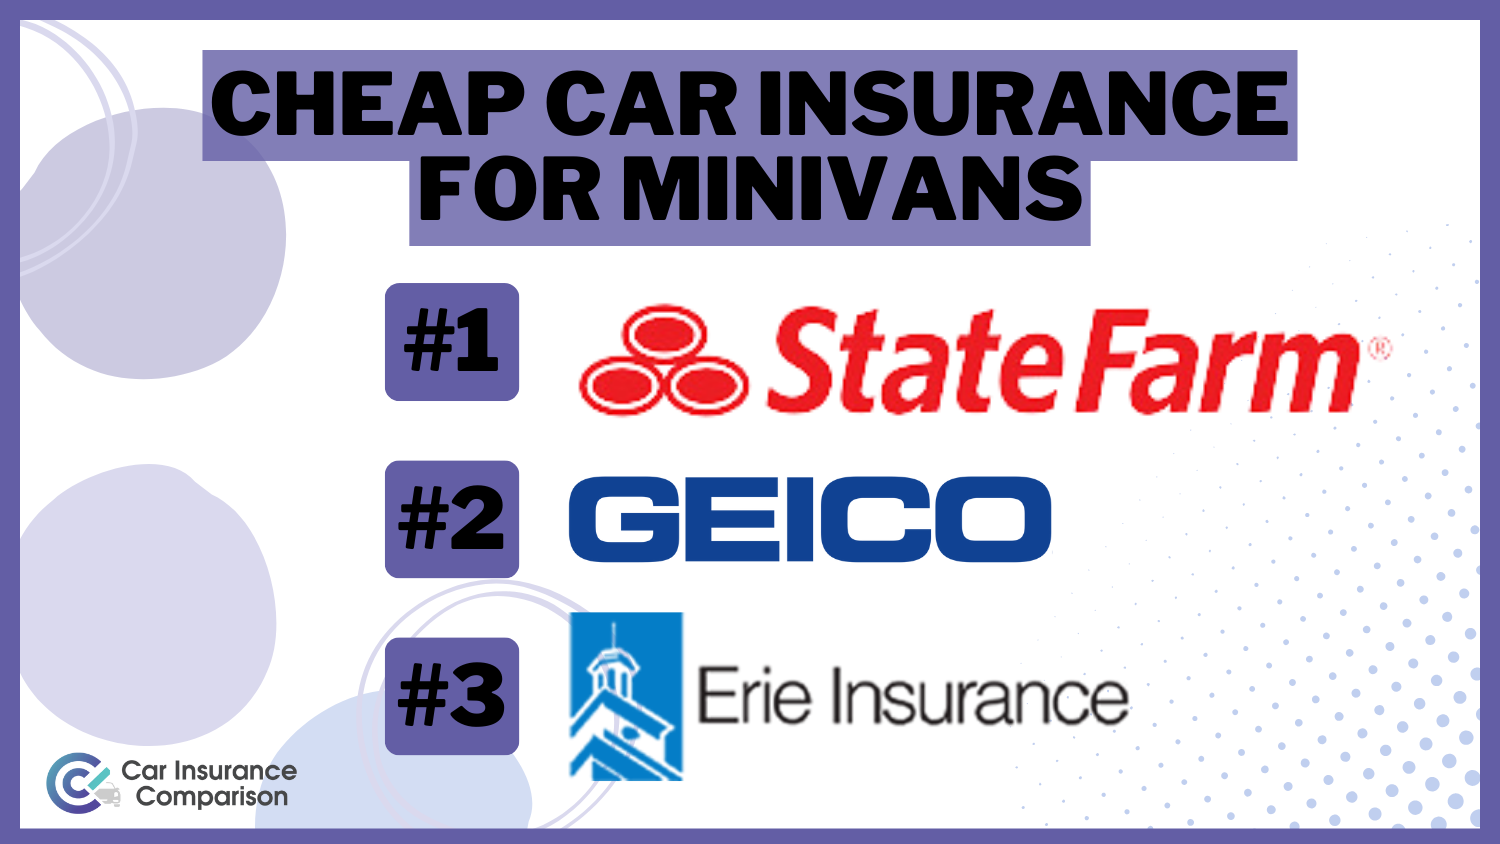 Cheap Car Insurance for Minivans: State Farm, Geico, Erie